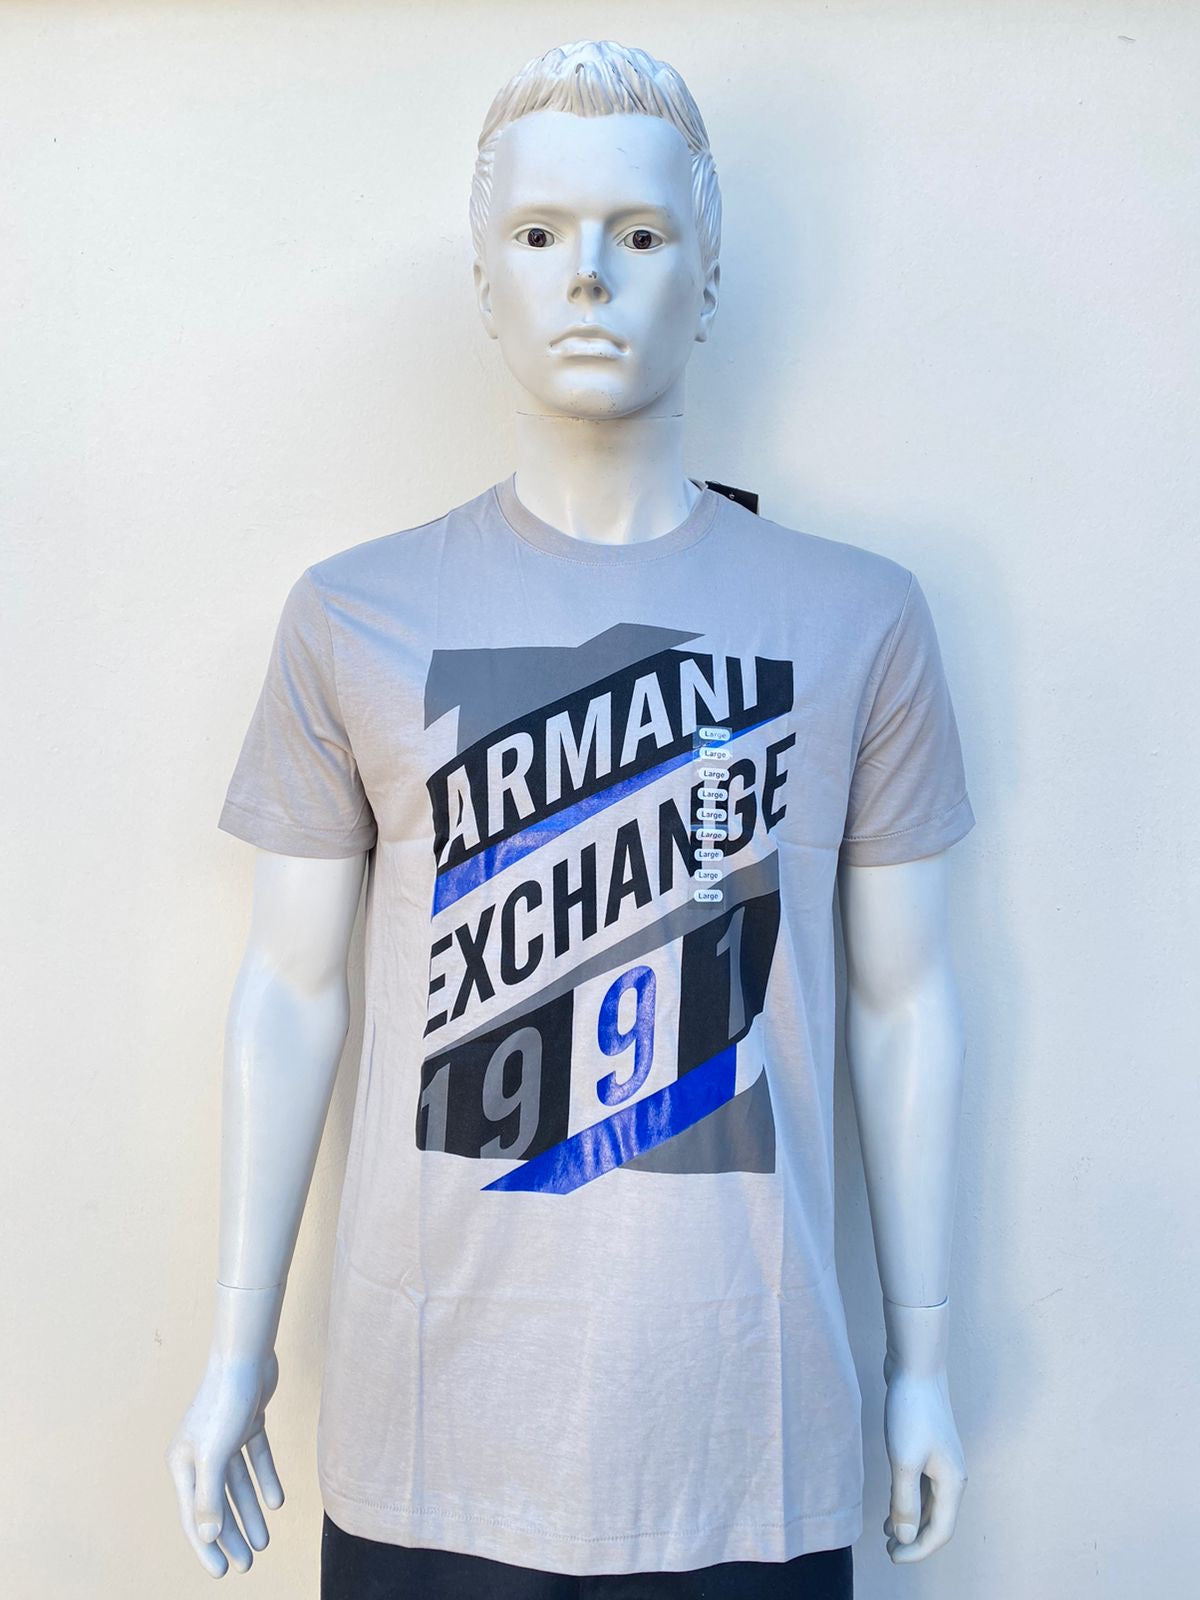 T-shirt Armani Exchange original gris con letras de la marca en frente y el número 1991.